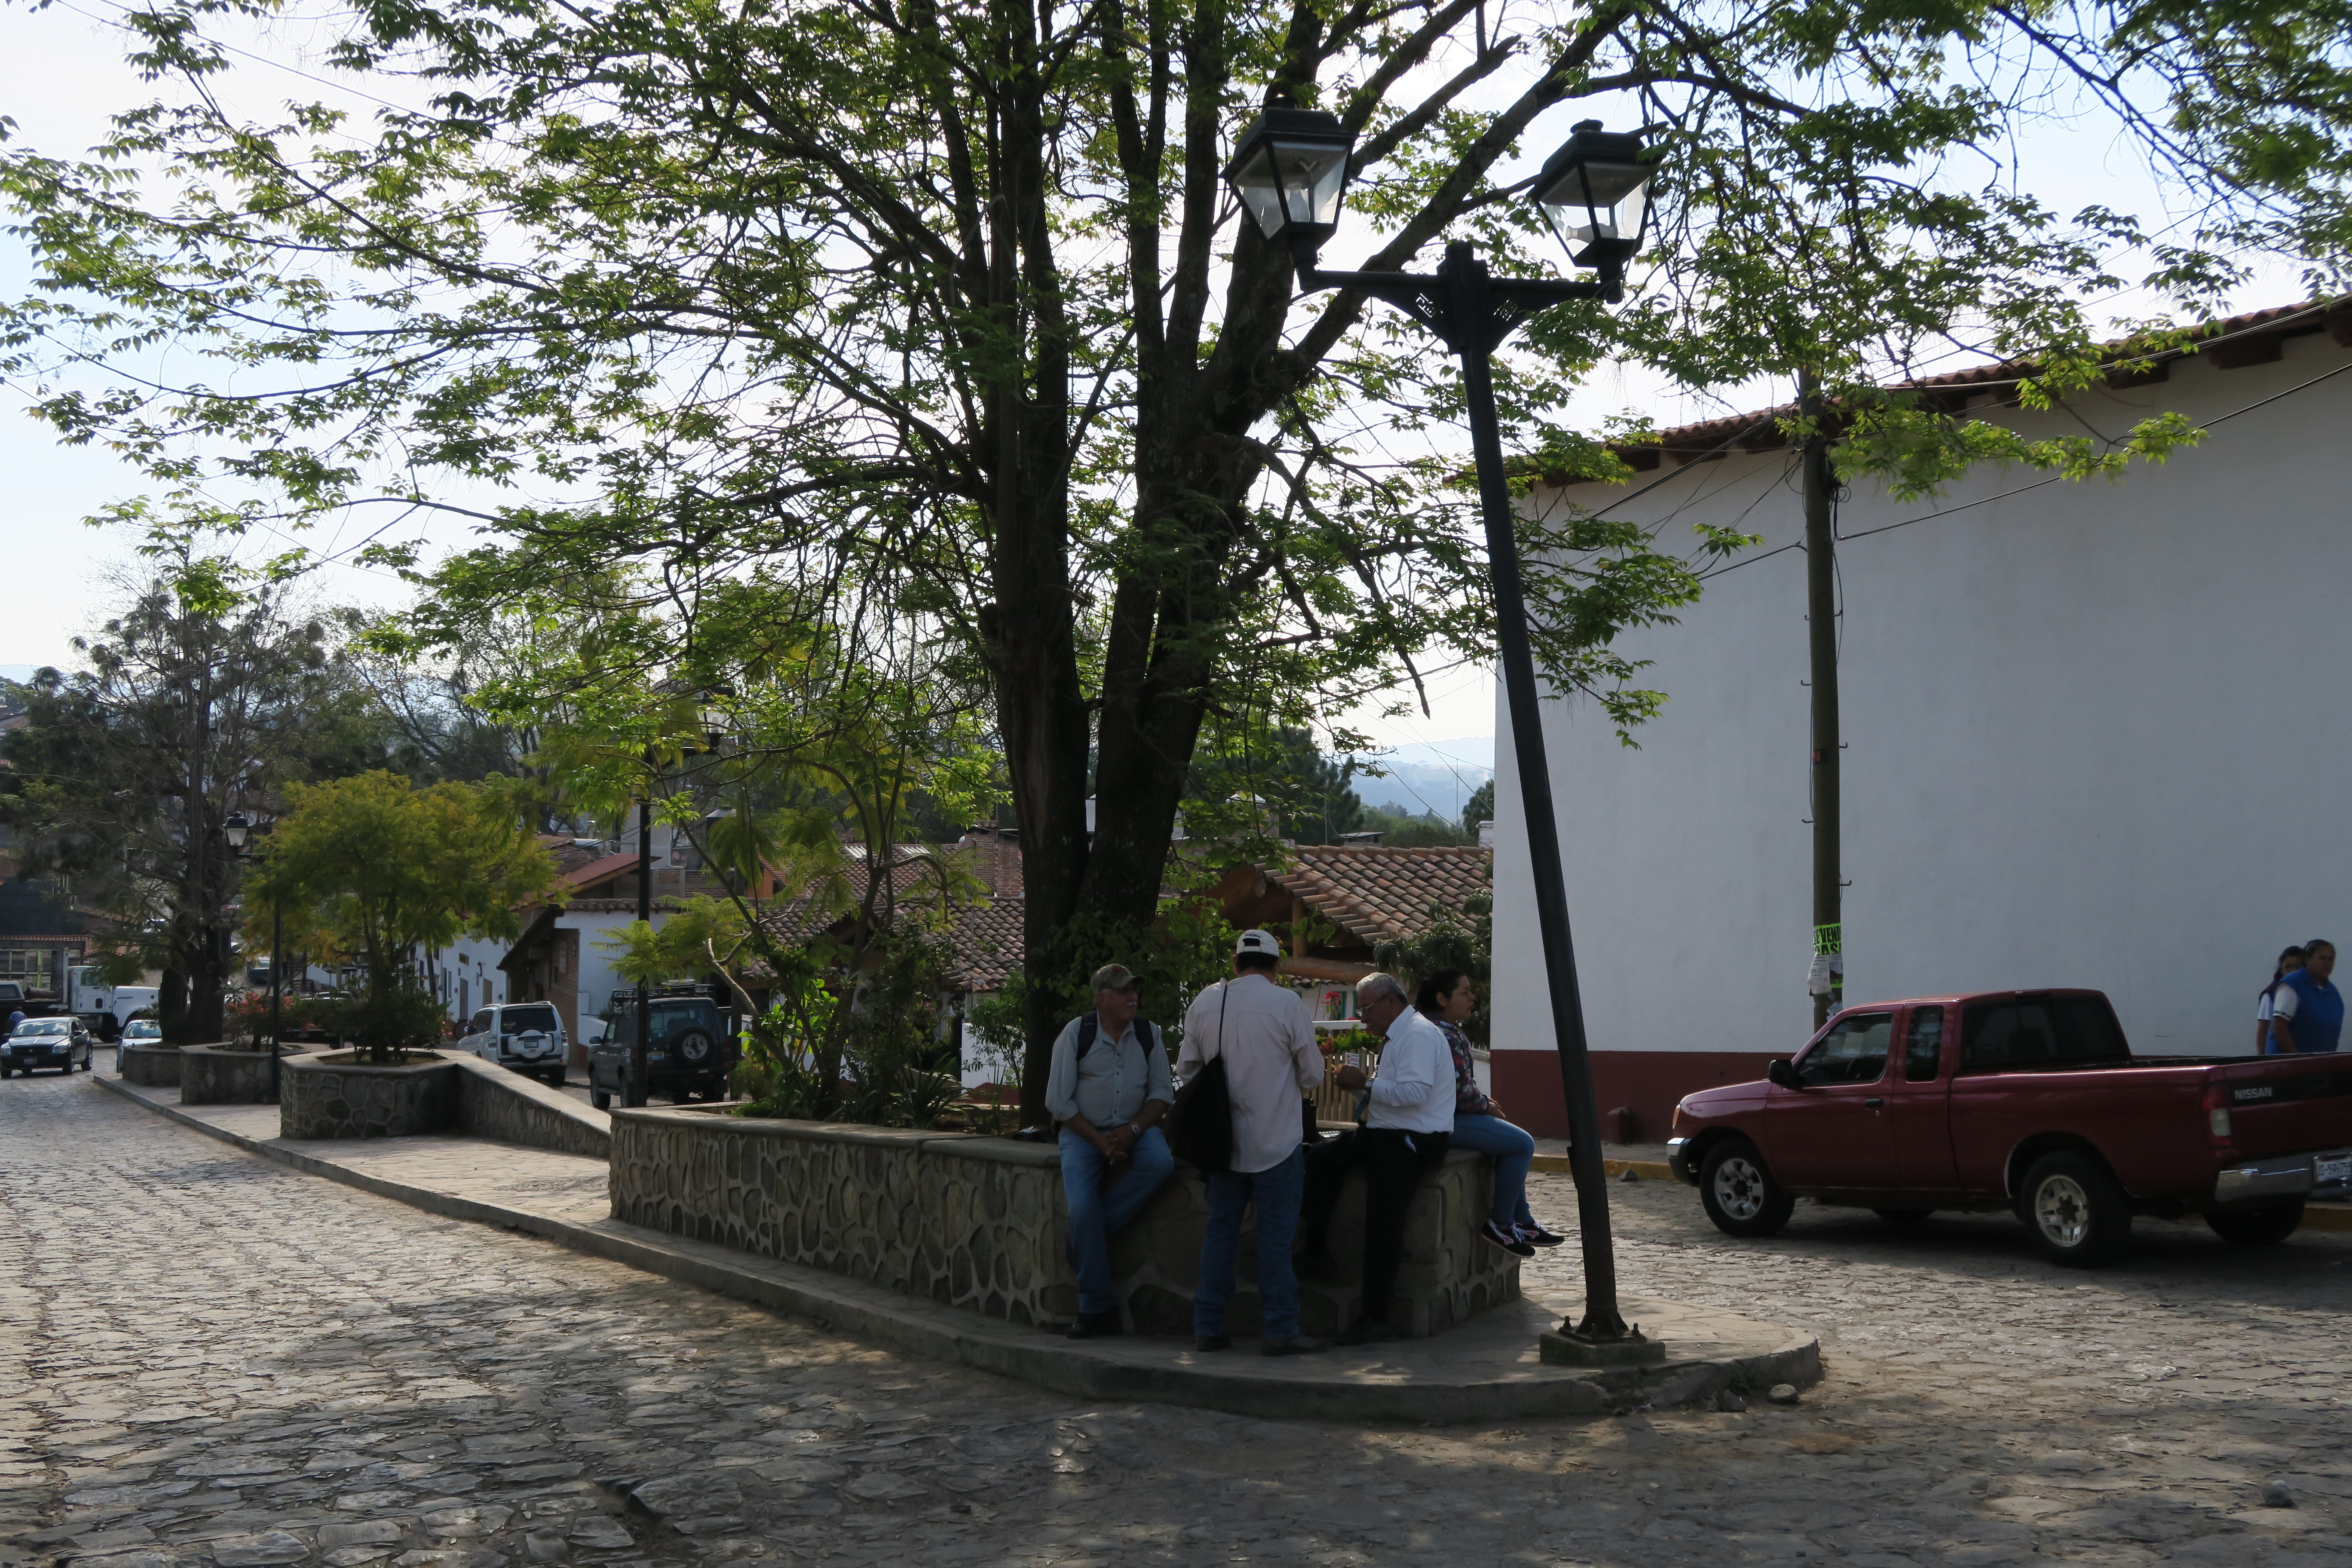 Bureau du vendeur de ticket de bus dans les ruelles du village de Tapalpa, Jalisco, Mexique